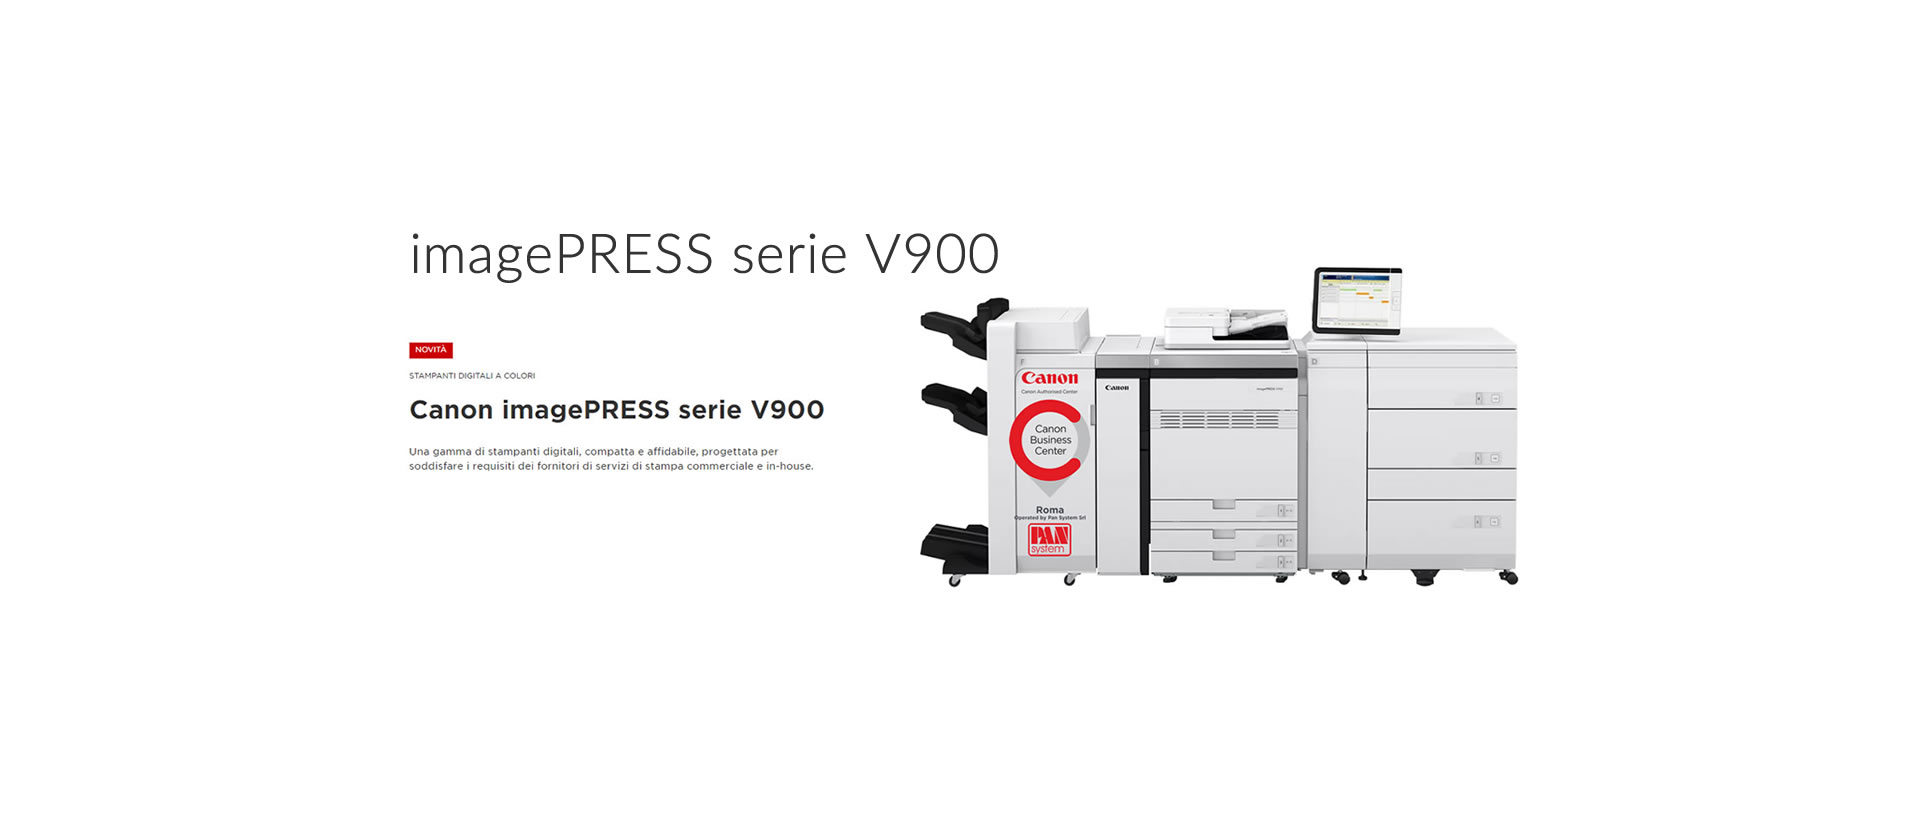 imagePRESS serie V900